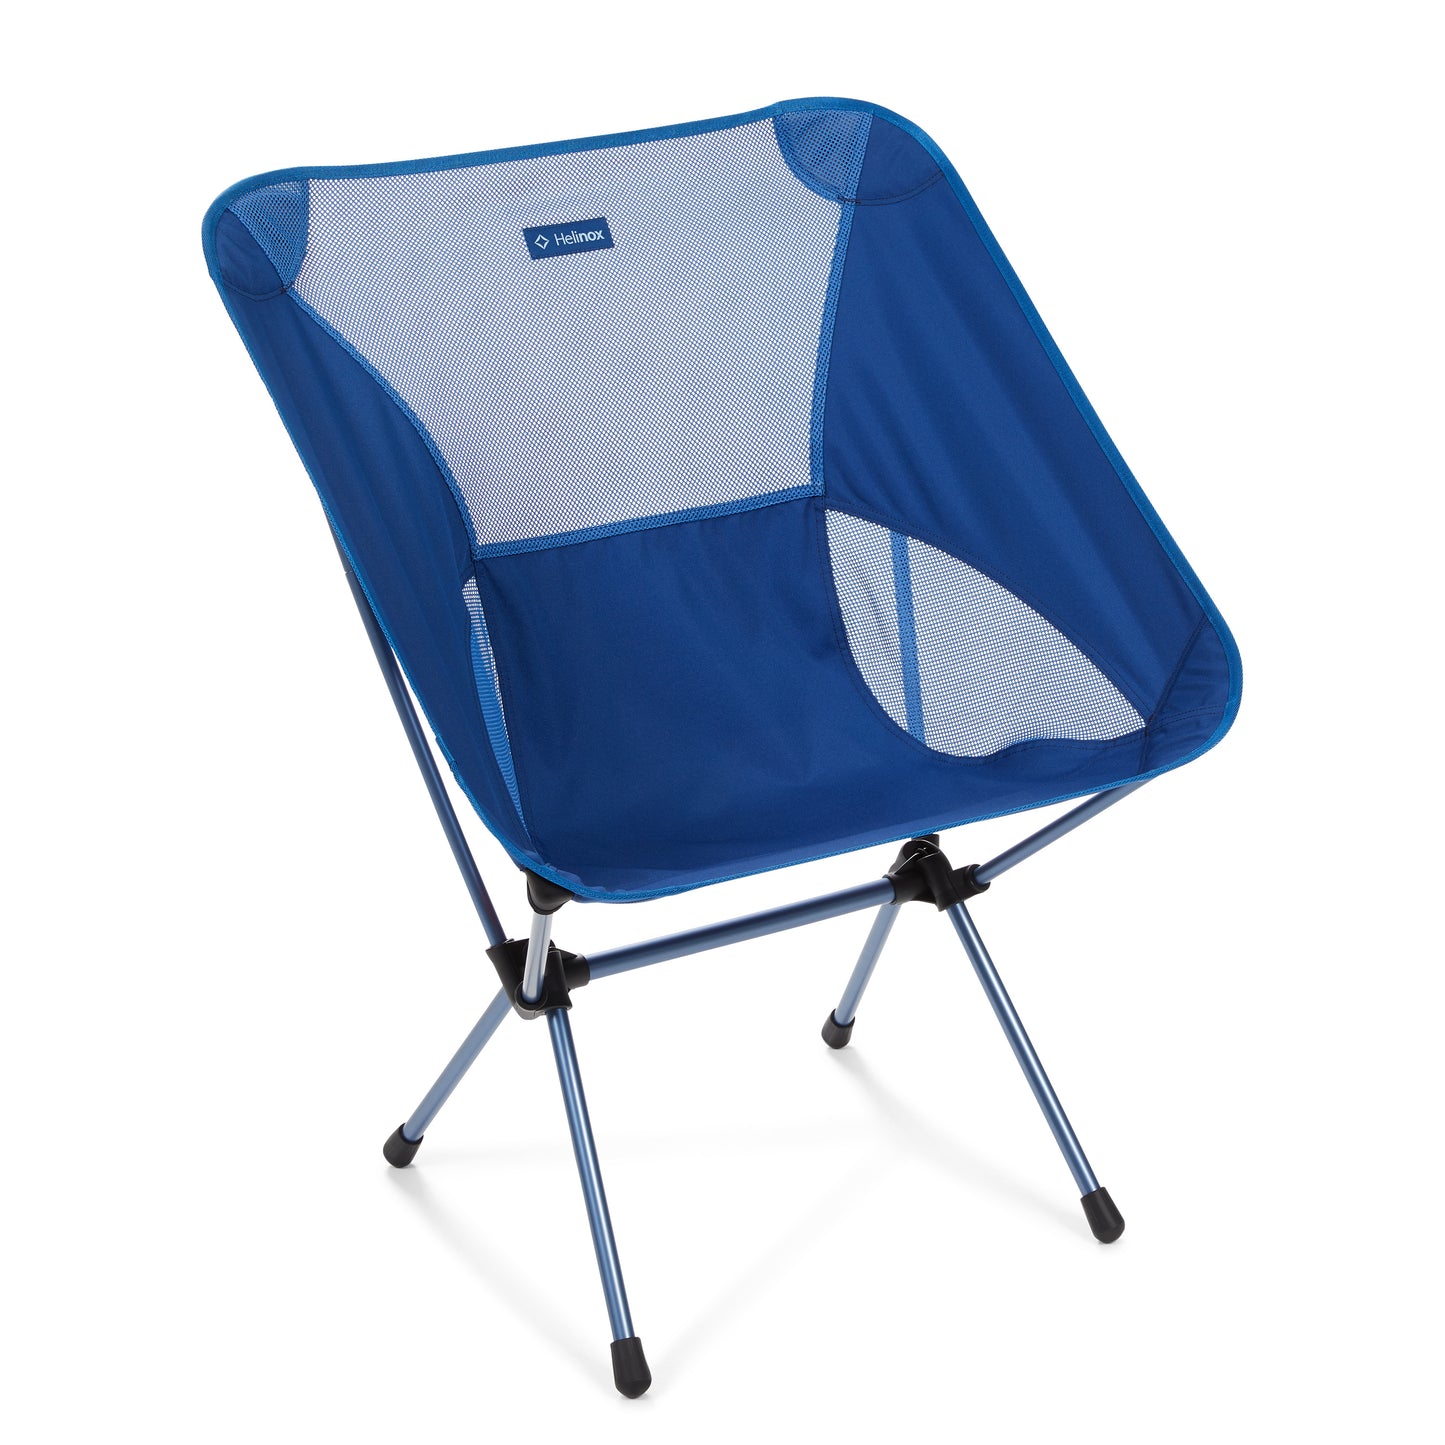 Chair One XL - Blue Block